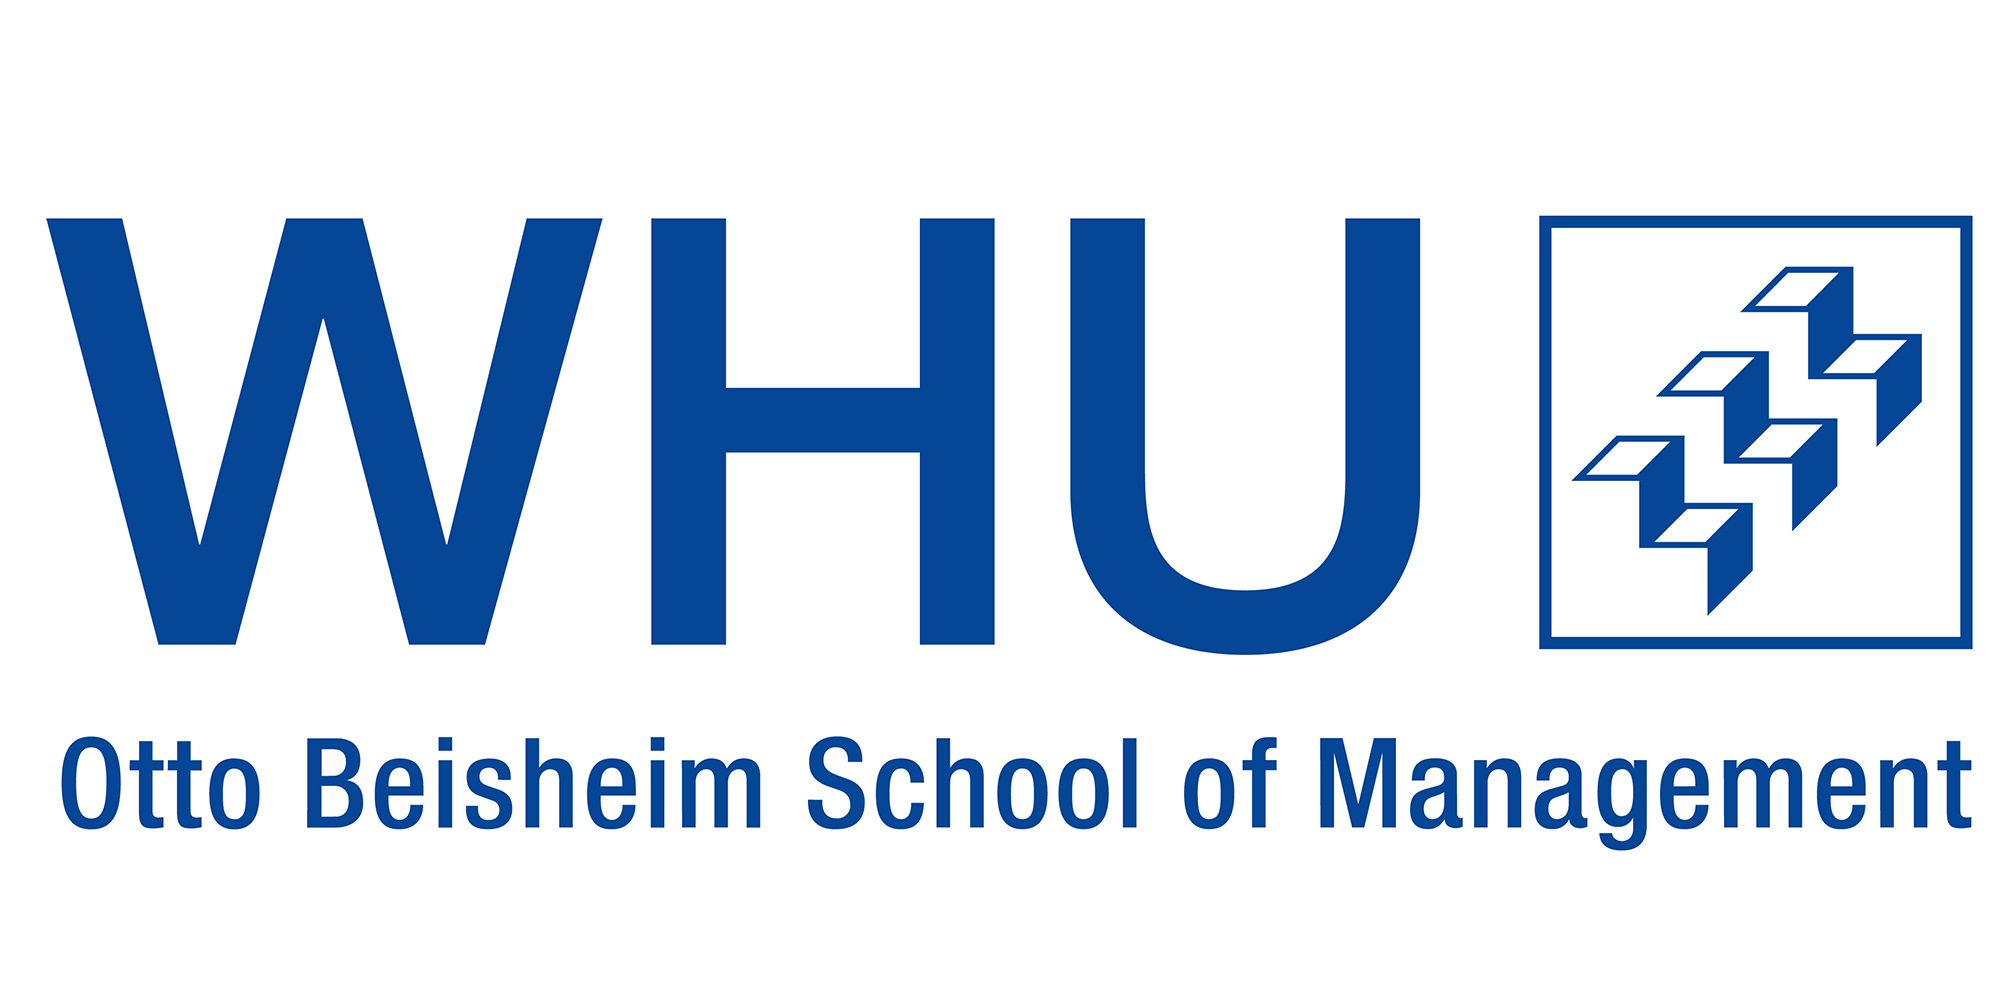 Logo: WHU - Otto Beisheim School of Management